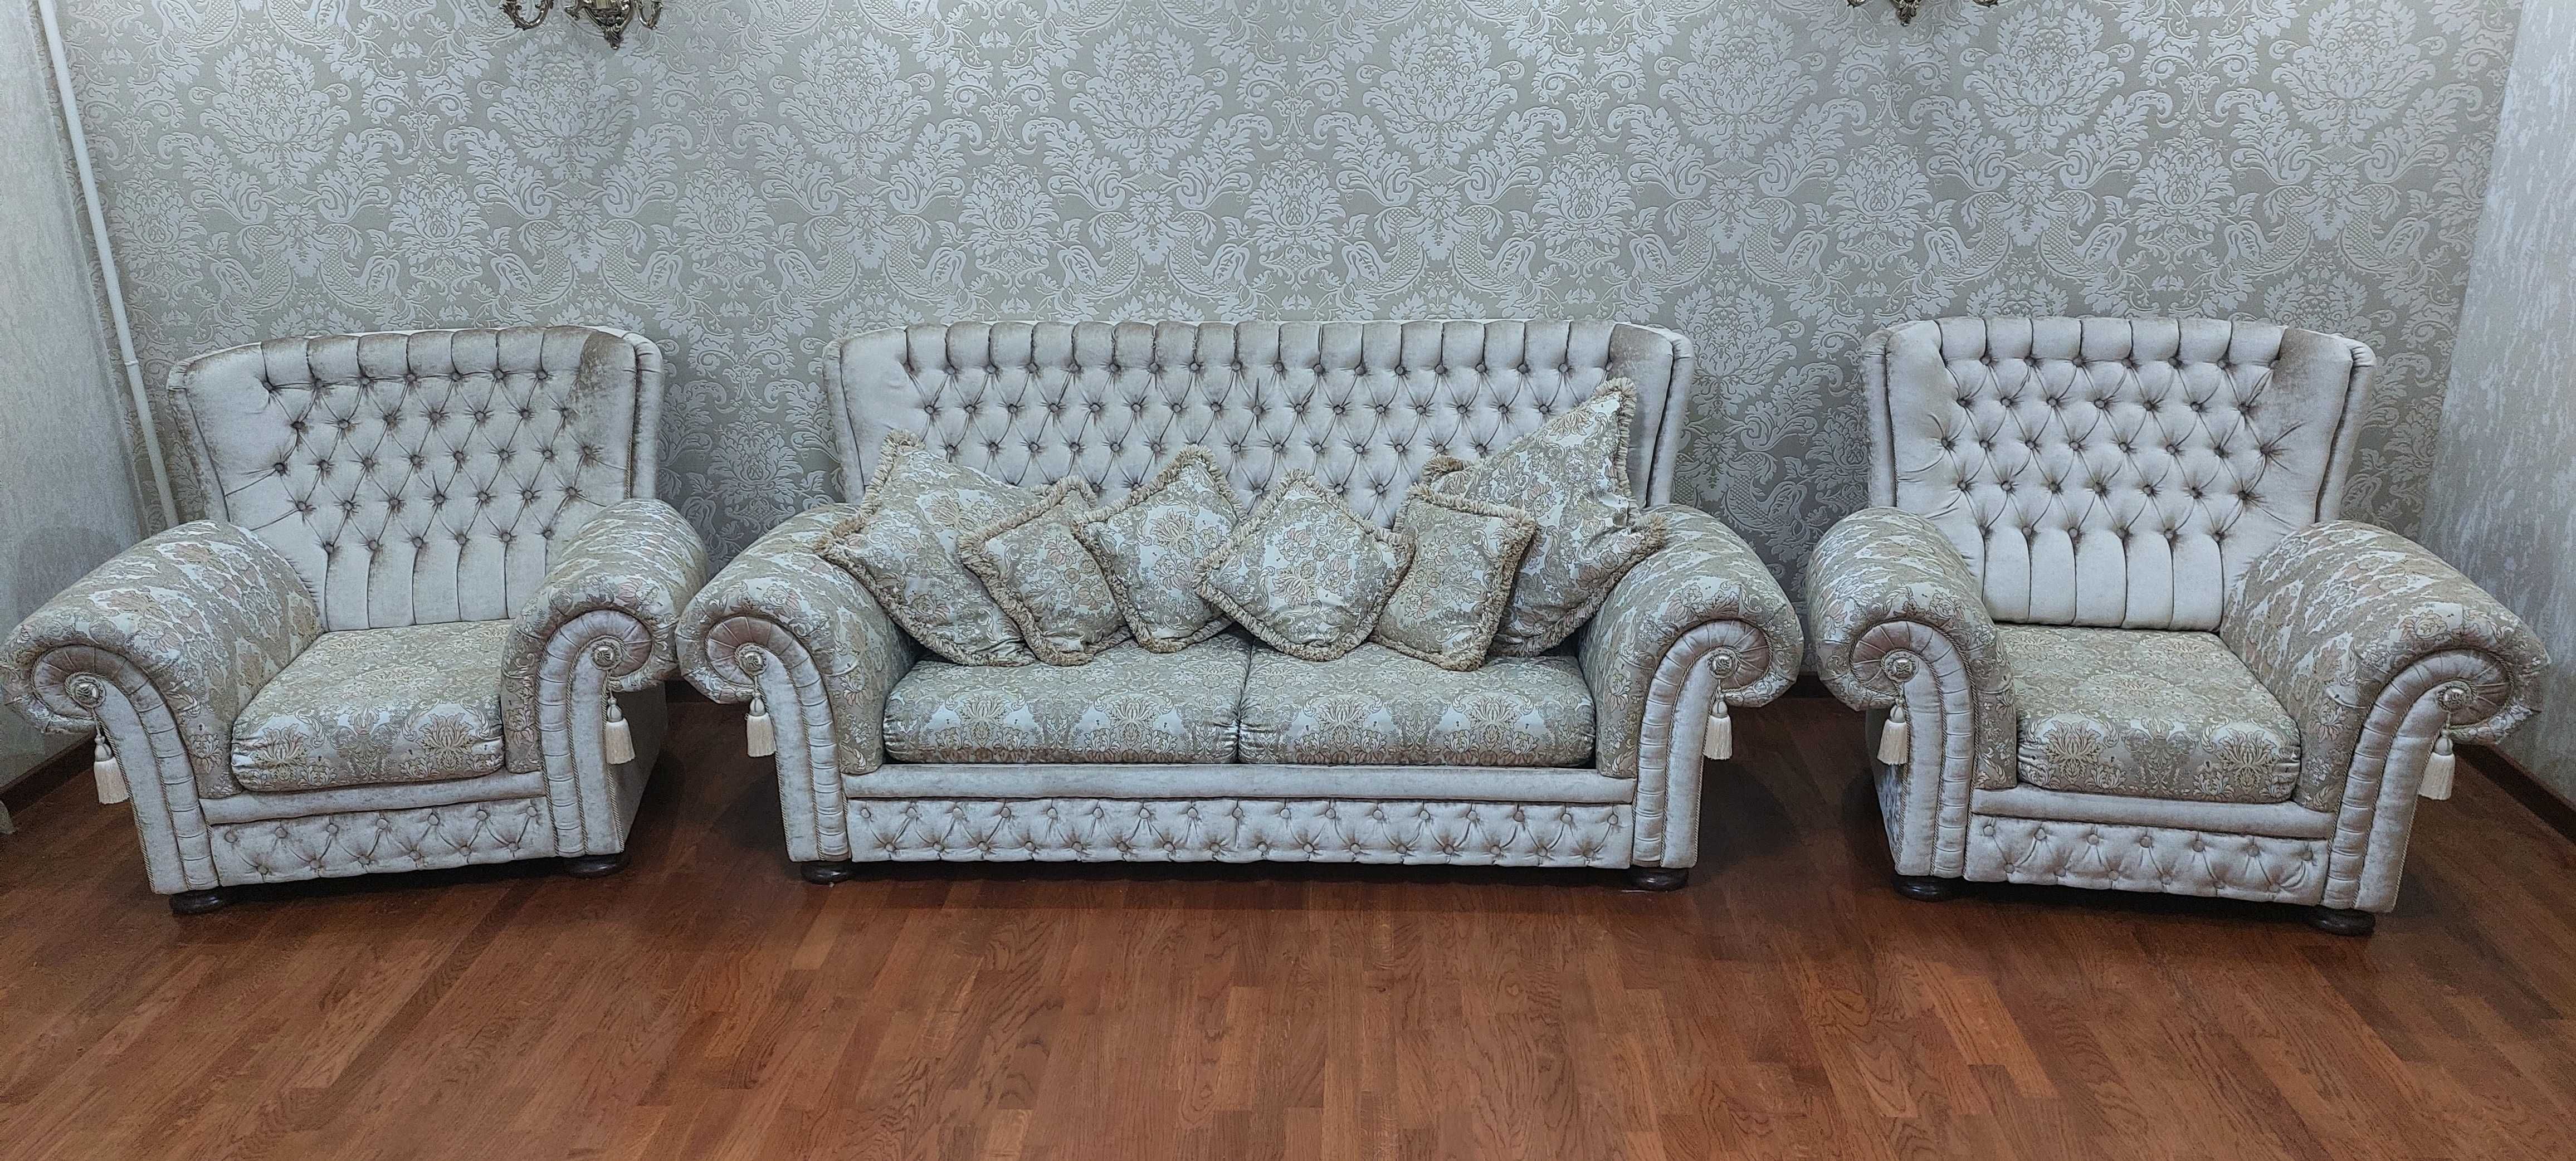 Итальянский диван + 2 кресла